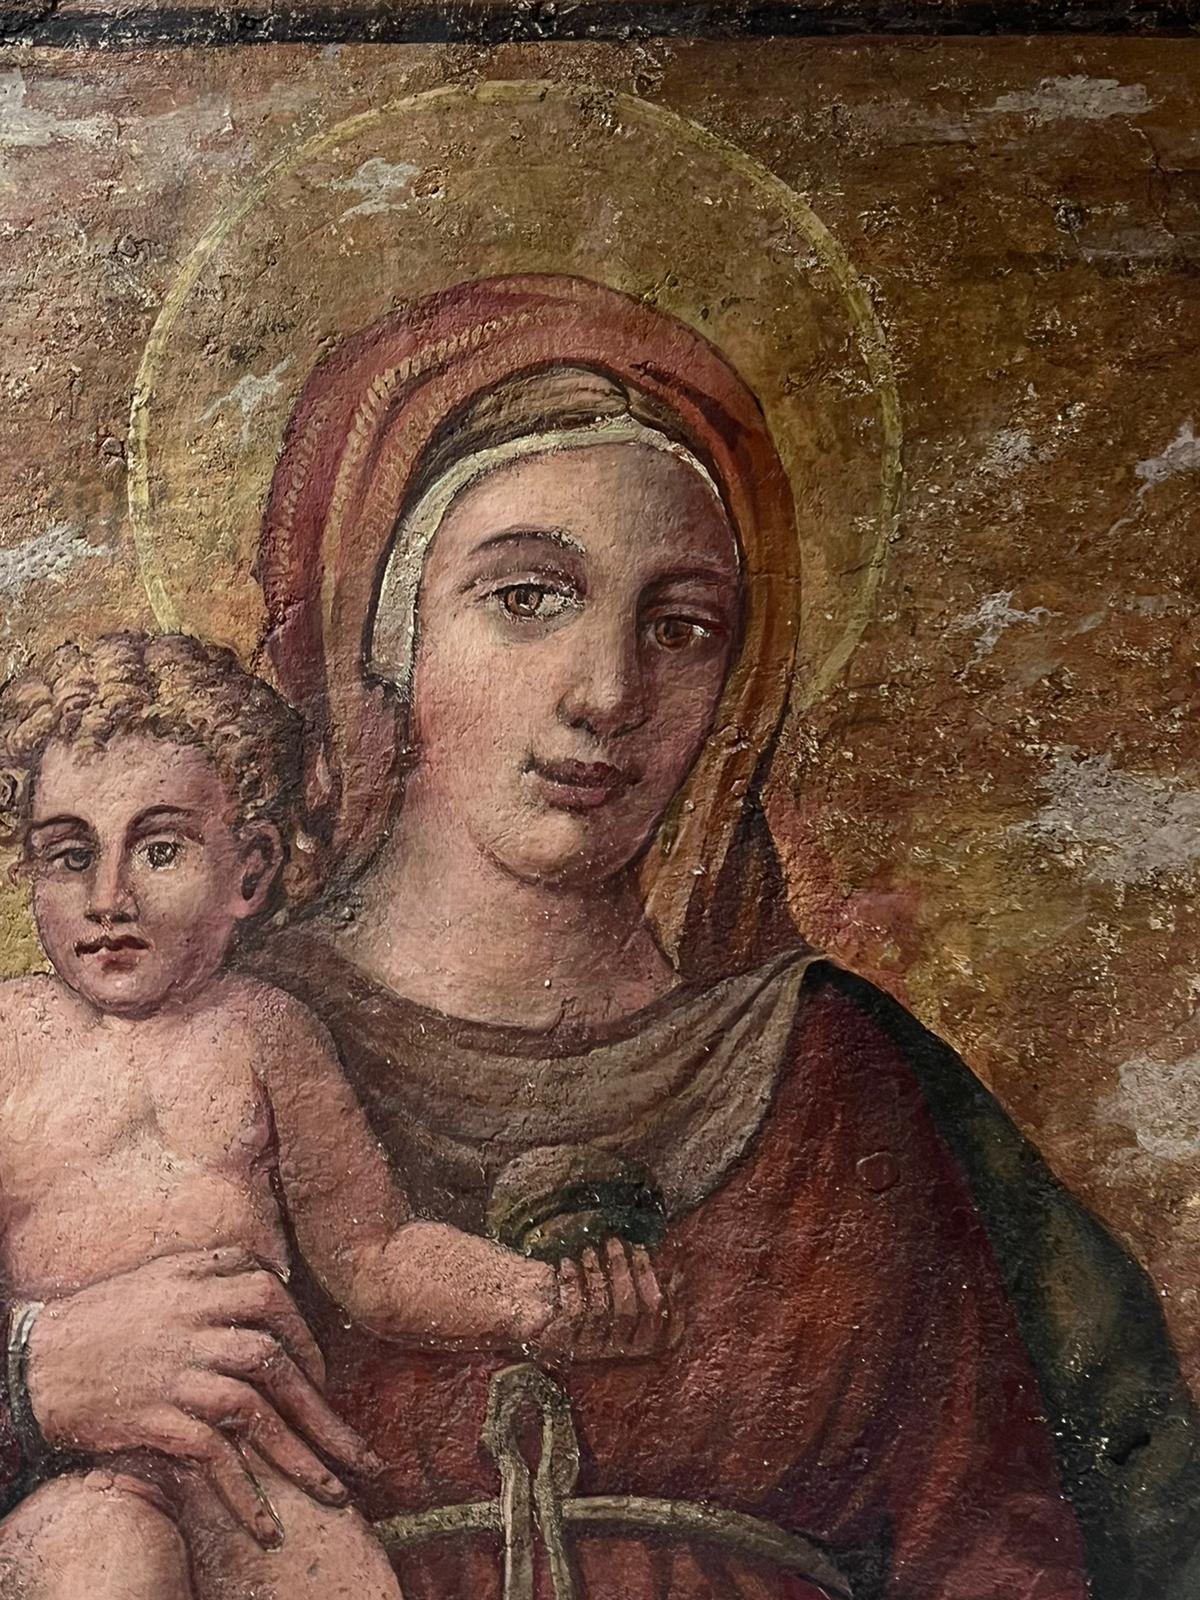 Italienisches Gemälde Madonna & Kind Tender Embrace im Renaissance-Stil, Altmeister – Painting von 19th century Italian School